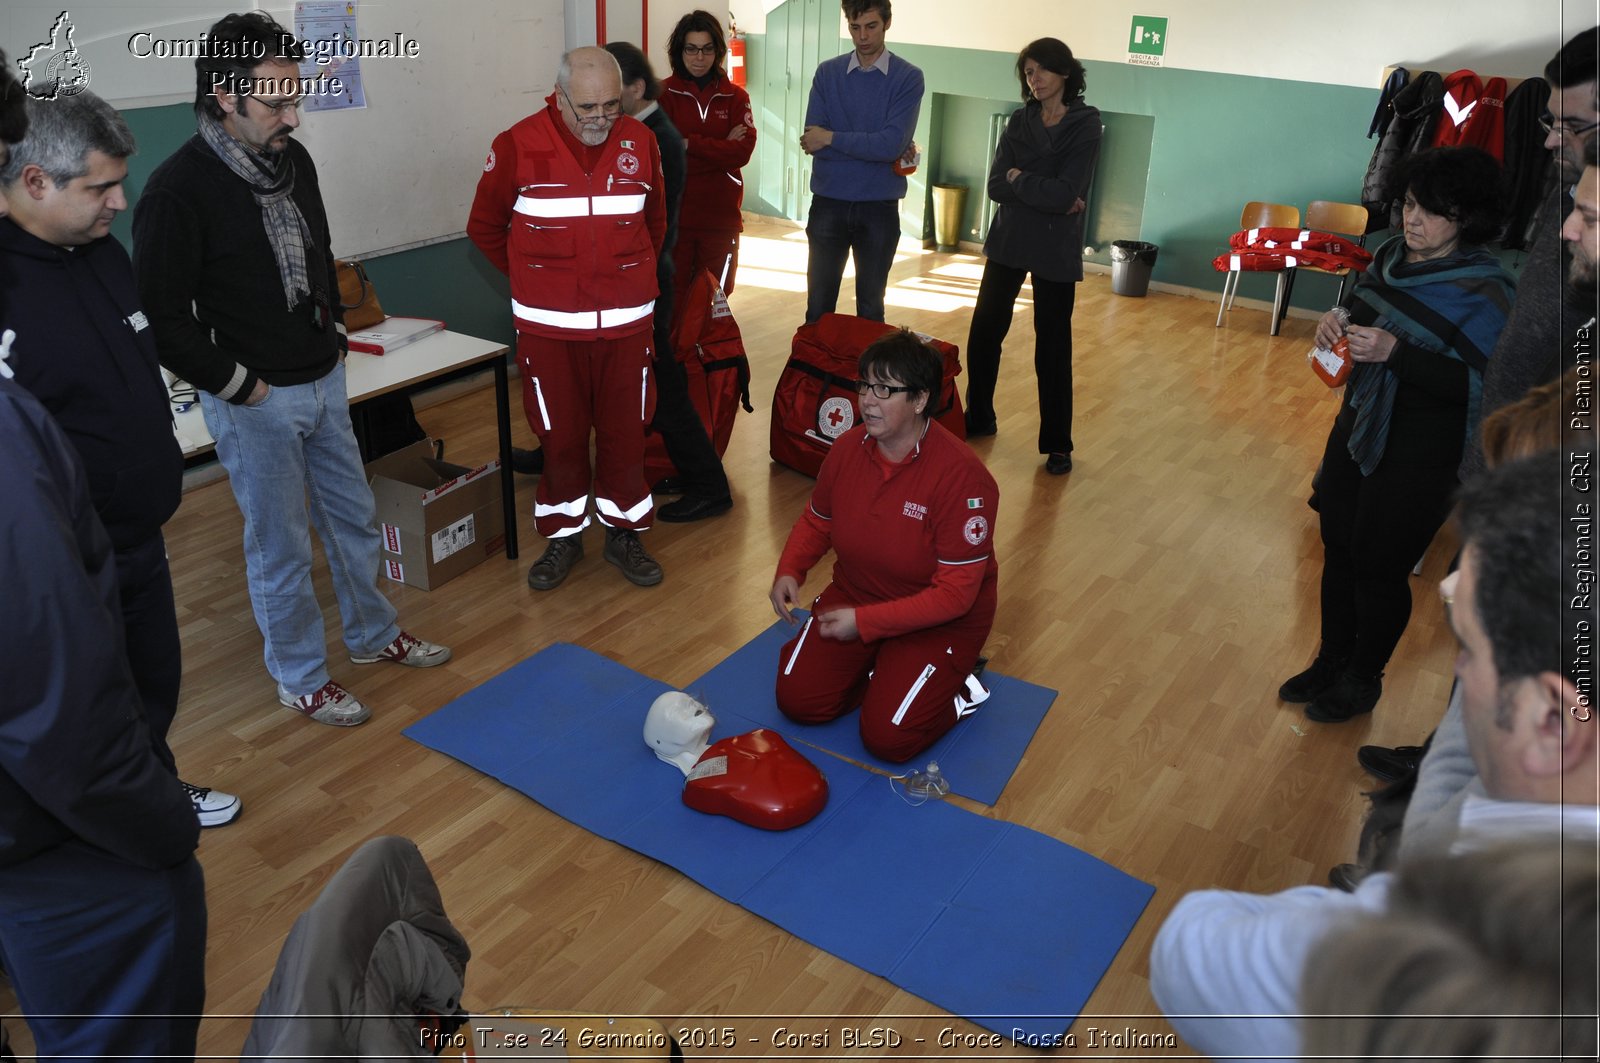 Pino T.se 24 Gennaio 2015 - Corsi BLSD - Croce Rossa Italiana- Comitato Regionale del Piemonte